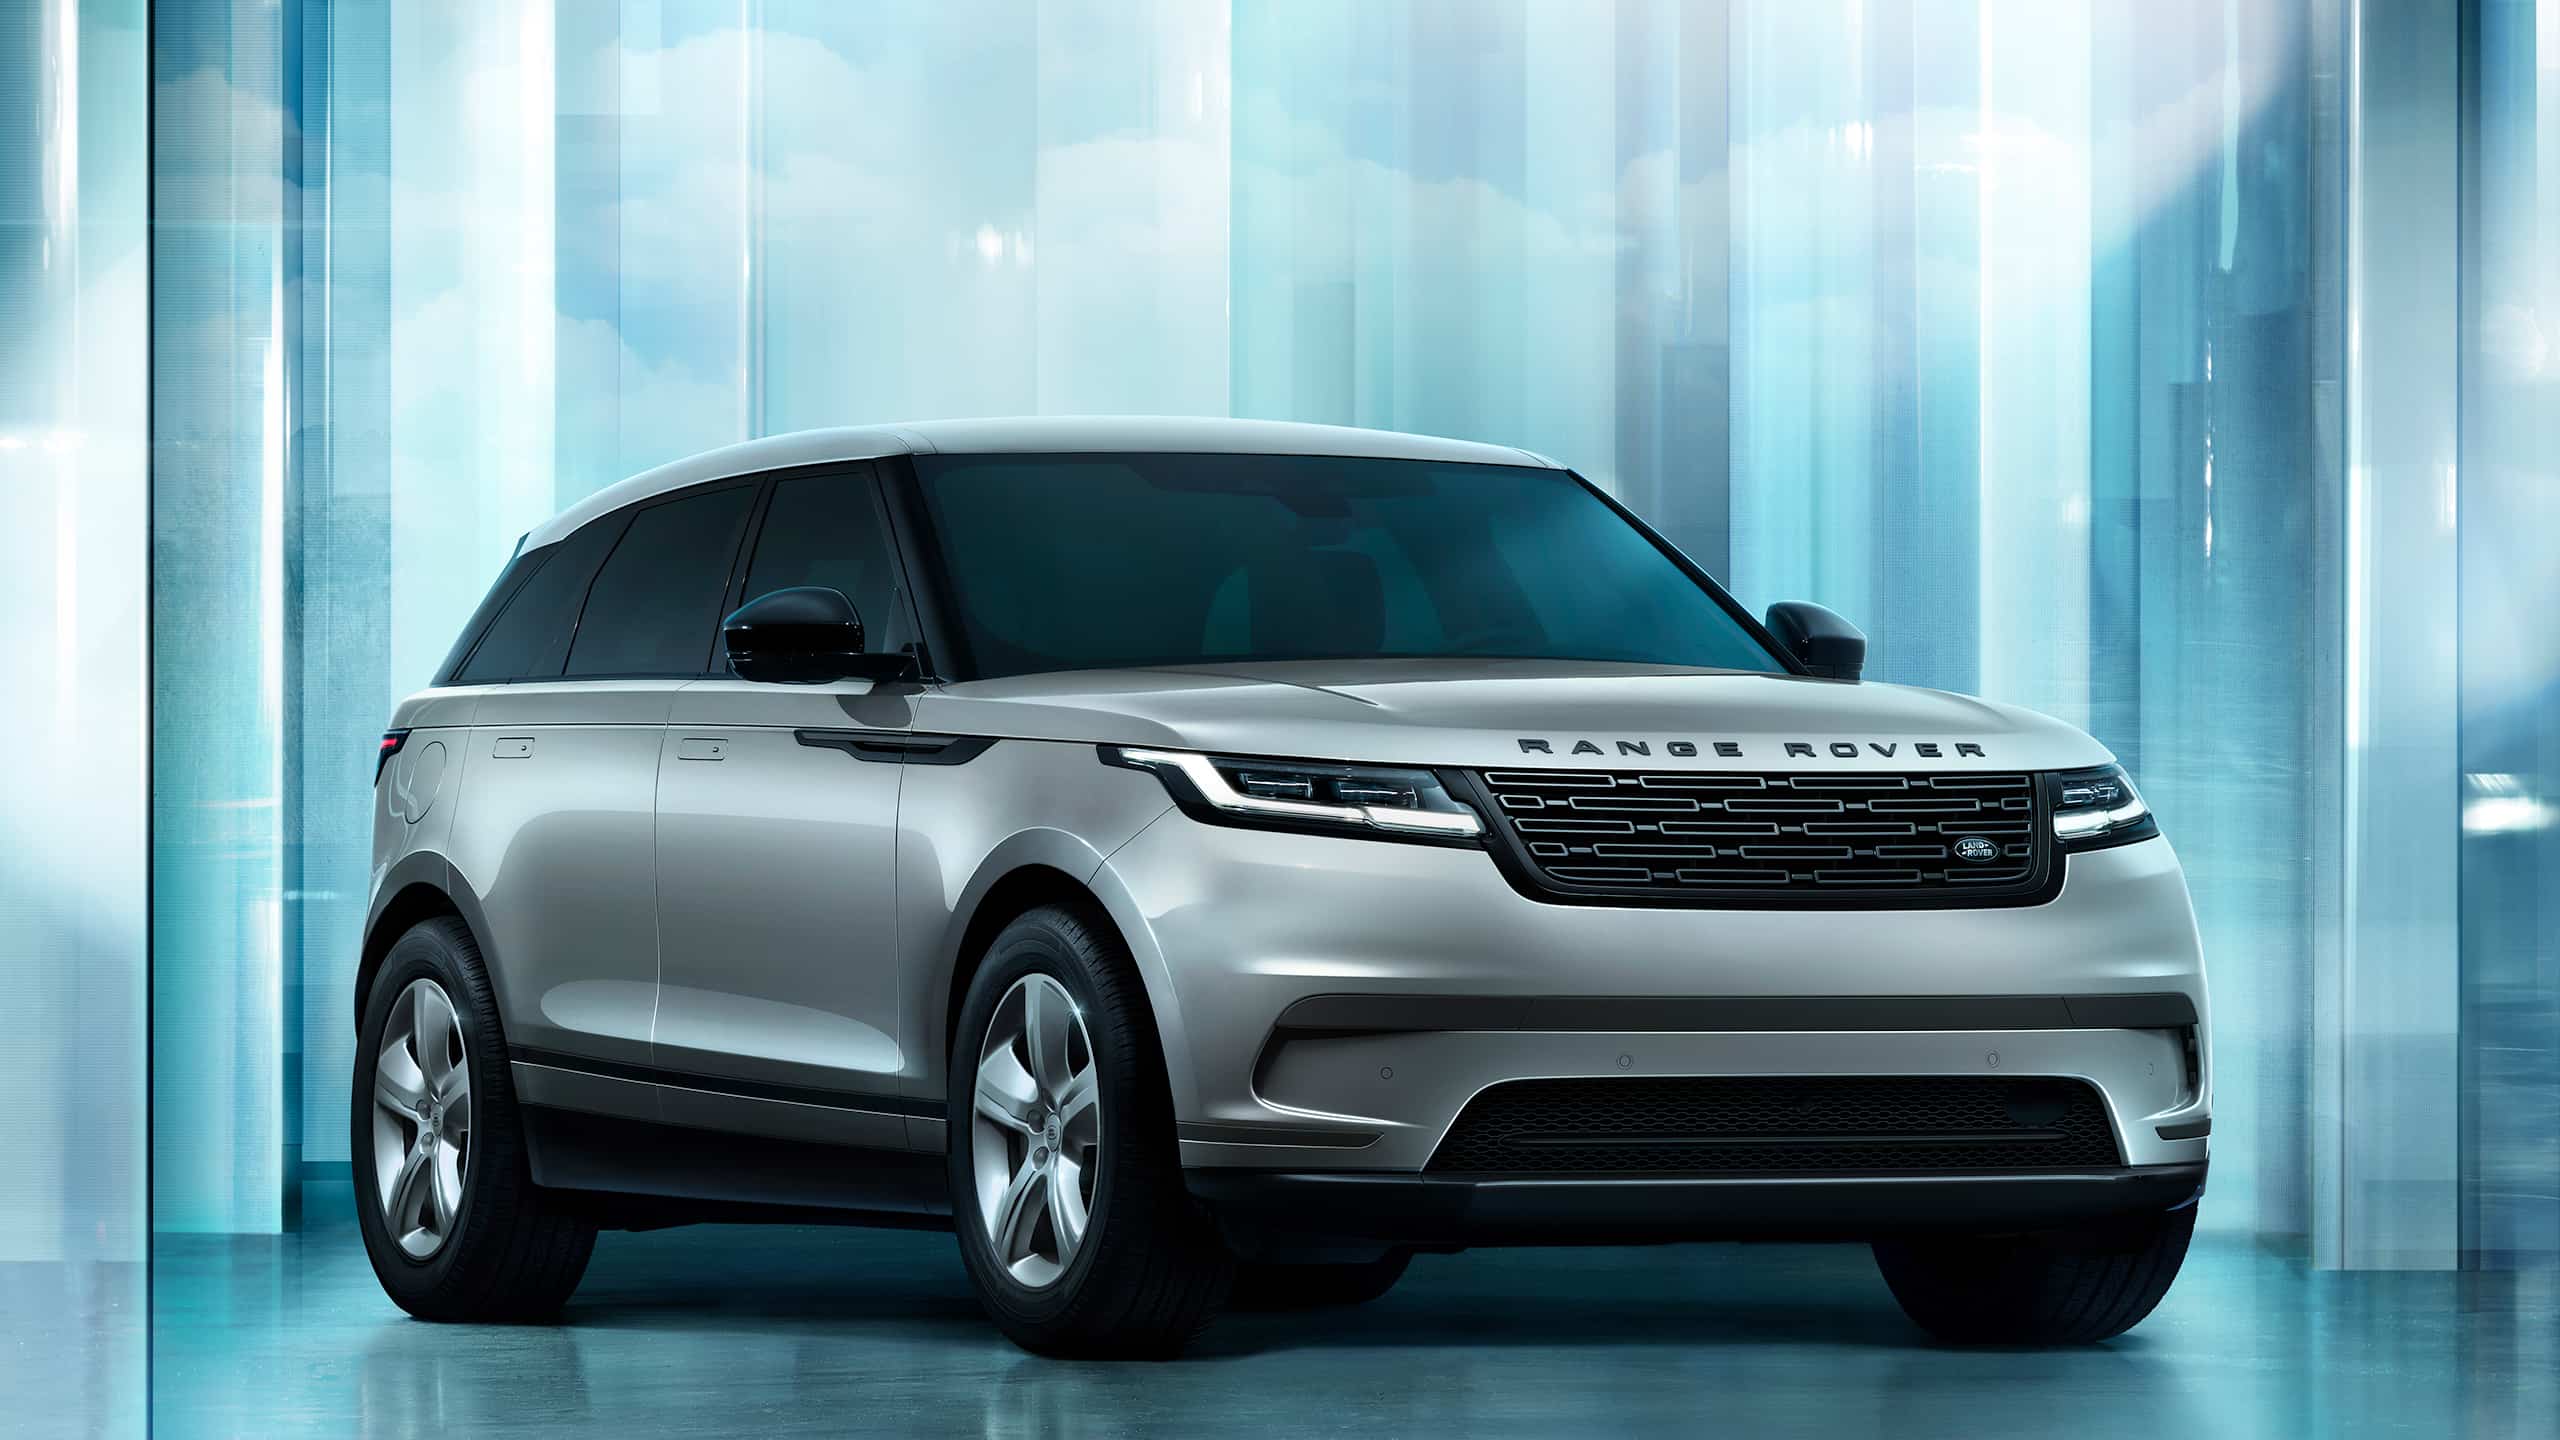 New Range Rover Velar Models | Land Rover